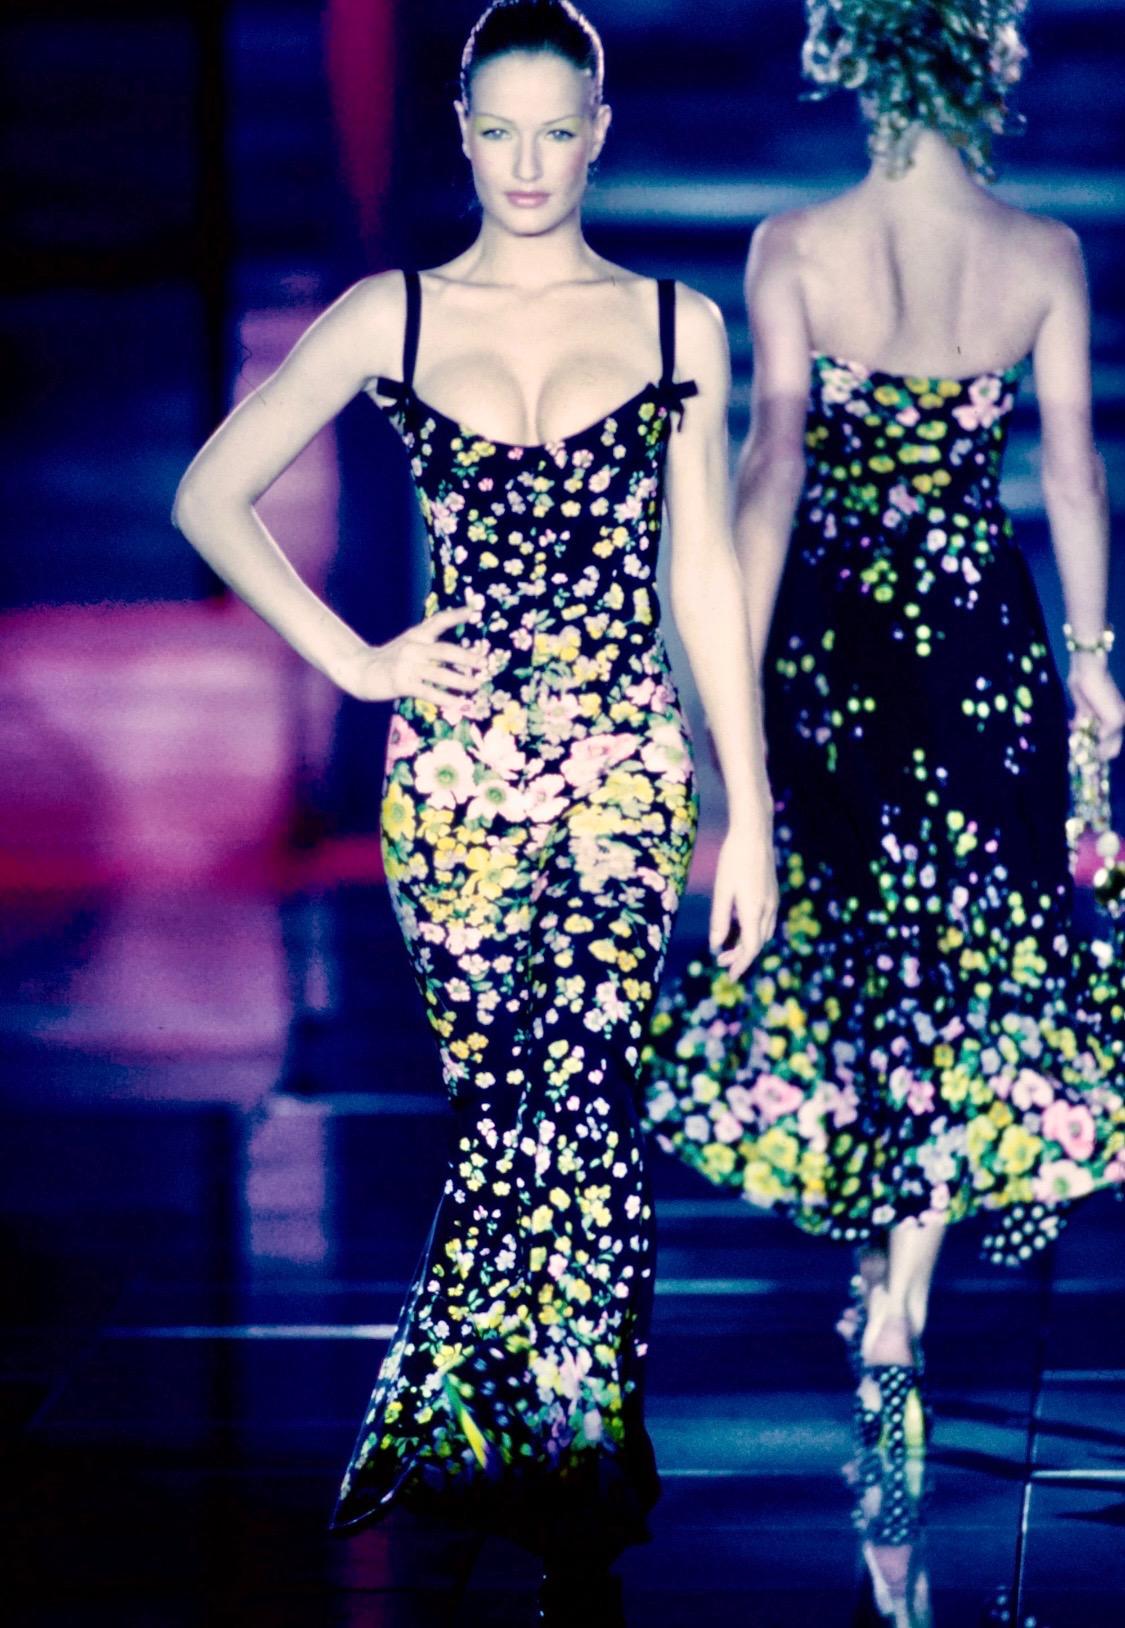 Voici un magnifique blazer Gianni Versace à fleurs multicolores, conçu par Gianni Versace. Ce magnifique blazer de la collection printemps/été 1993 présente un fond noir avec l'imprimé floral multicolore vibrant qui était très présent sur les